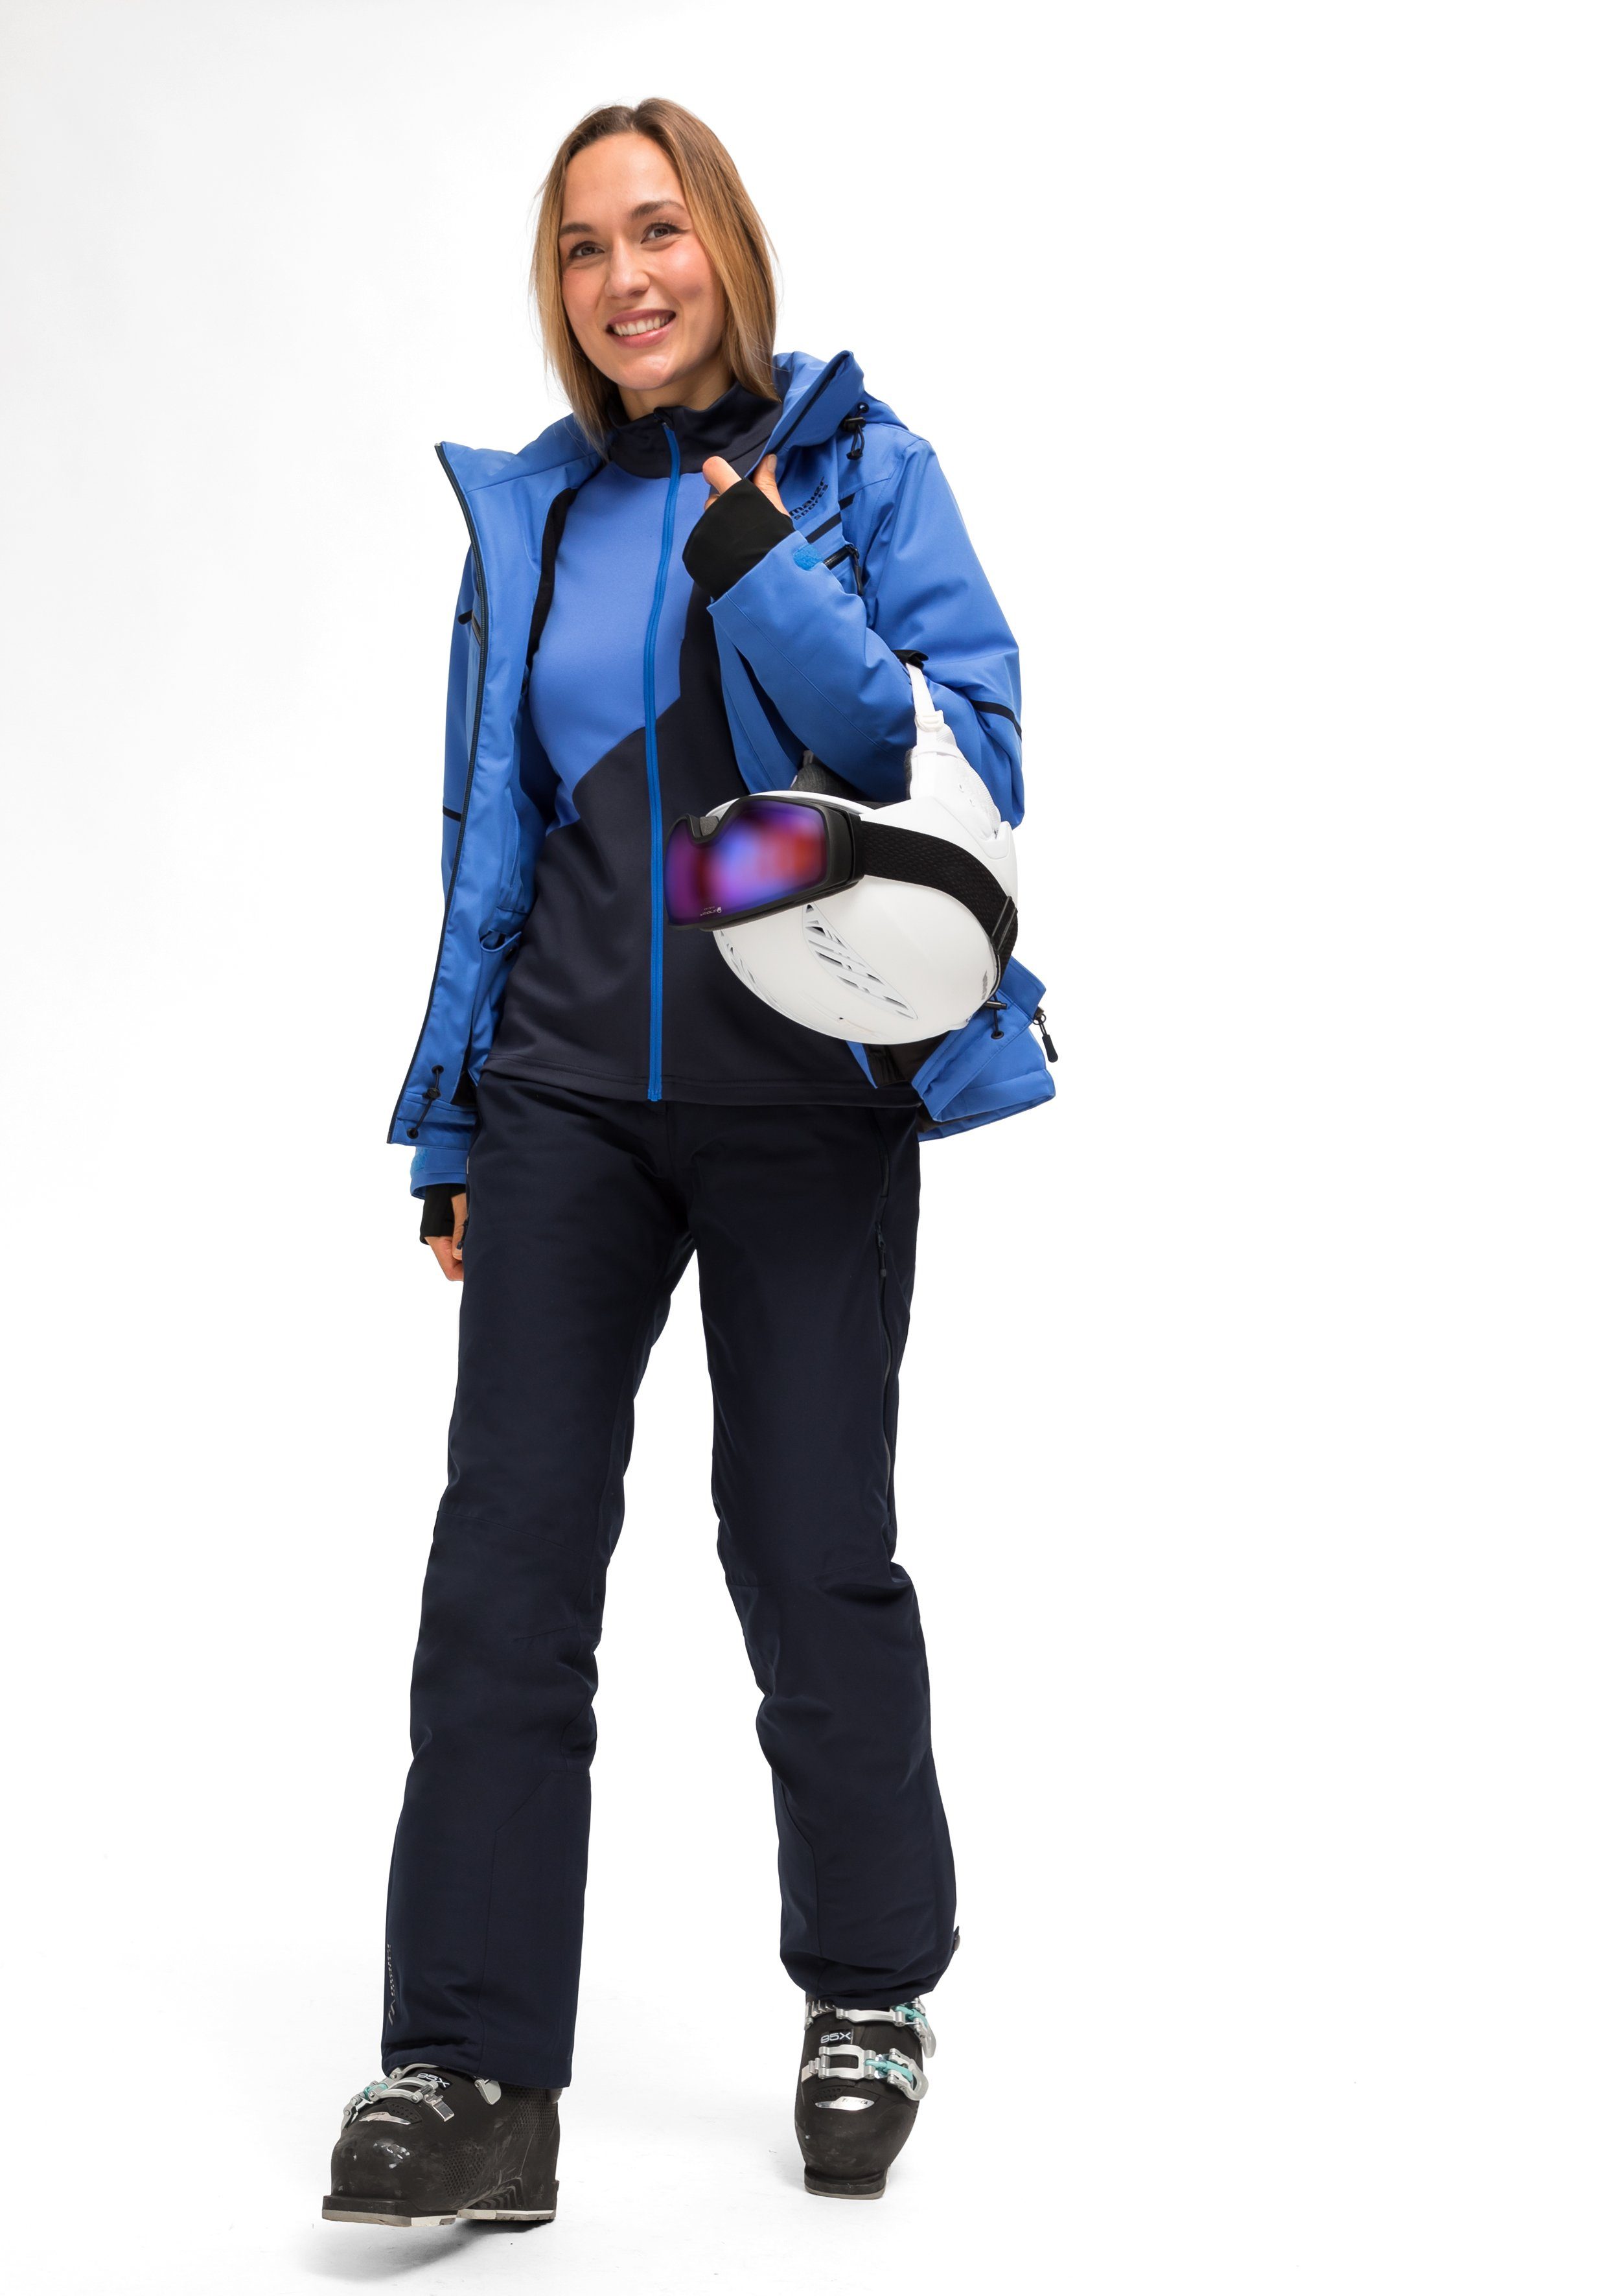 Damen Skijacke wasserdichte Winterjacke Lunada Sports pastellblau winddichte Maier und atmungsaktive Ski-Jacke,